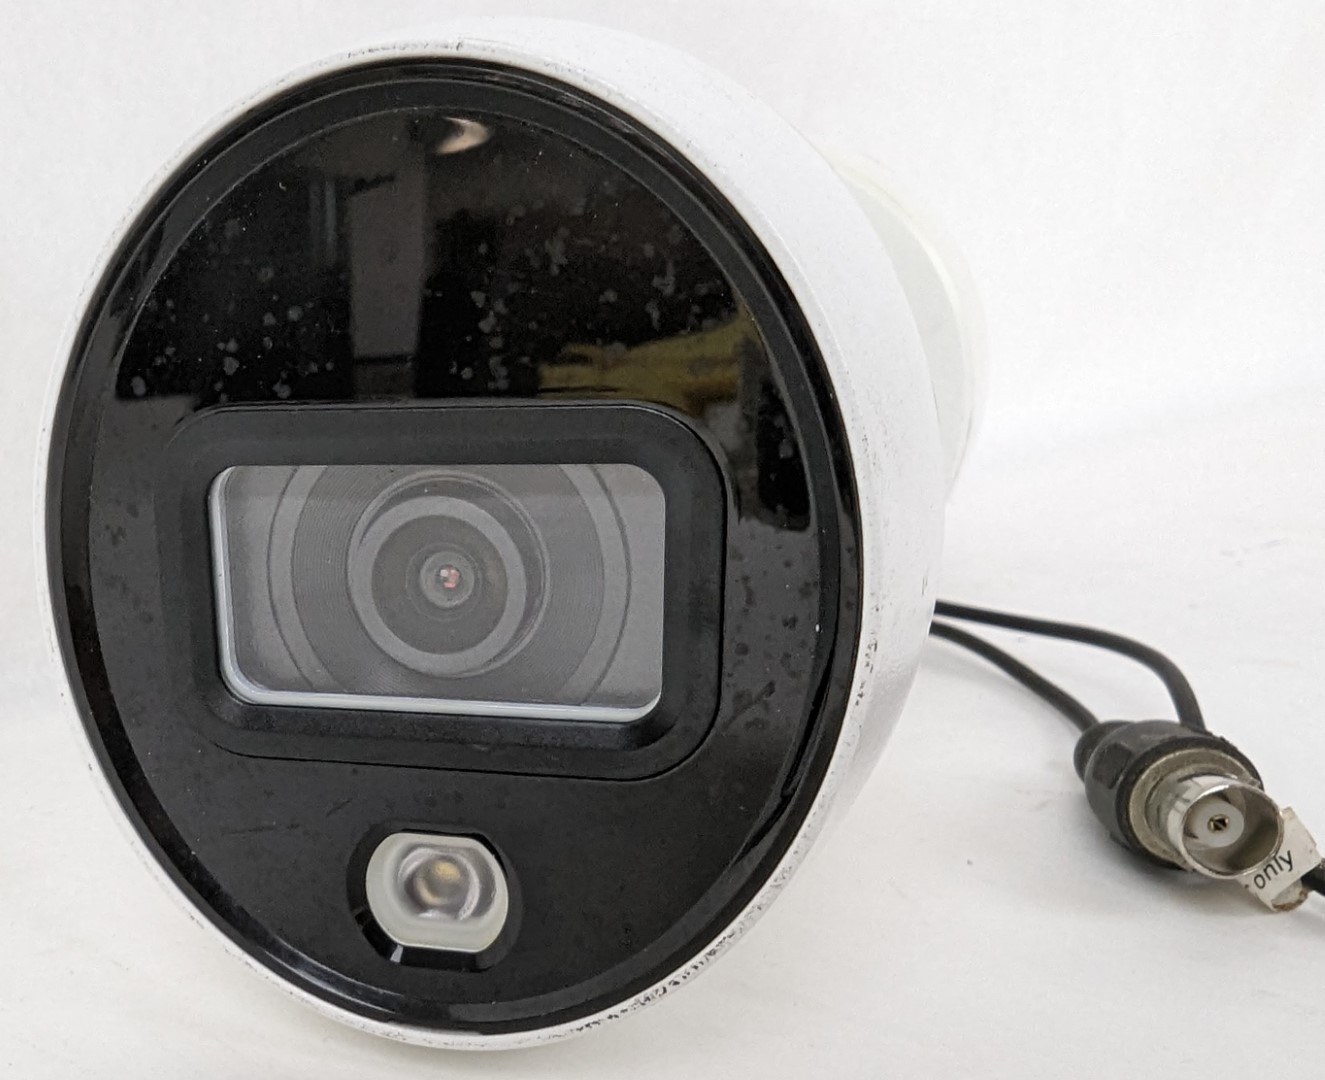 Lorex C883DA-Z Indoor Outdoor Deterrence 4K Security Camera